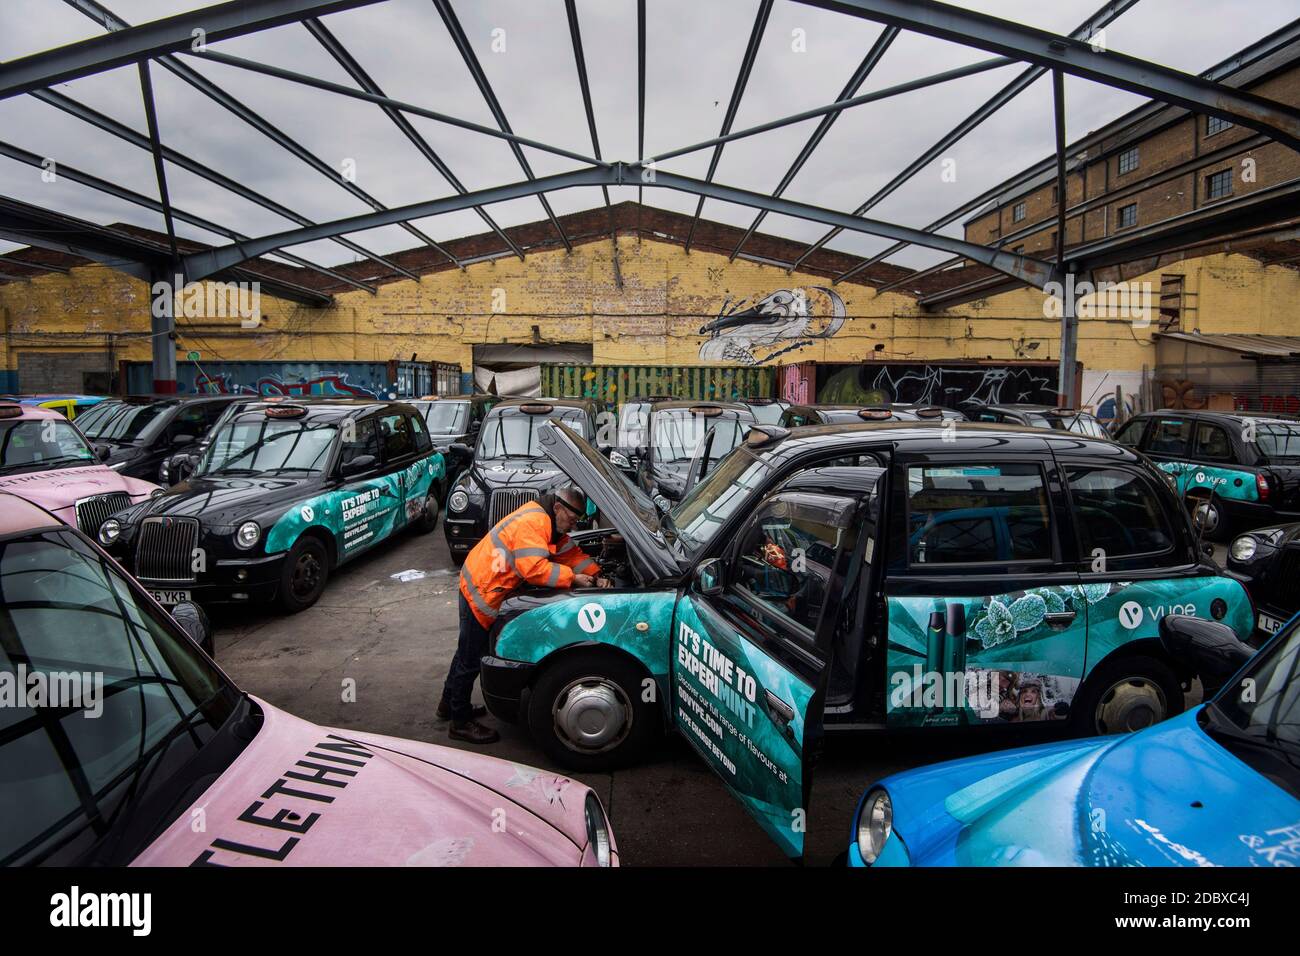 Ein Ingenieur arbeitet an einem entstellten schwarzen Taxi in einem Hof bei Sherbet London im Osten Londons, wo sich aufgrund eines starken Nachfragerückgangs eine große Anzahl von Londoner Miettaxis anbaut, da die Beschränkungen des Coronavirus die Reise- und Büroarbeit weiter reduzieren. Stockfoto